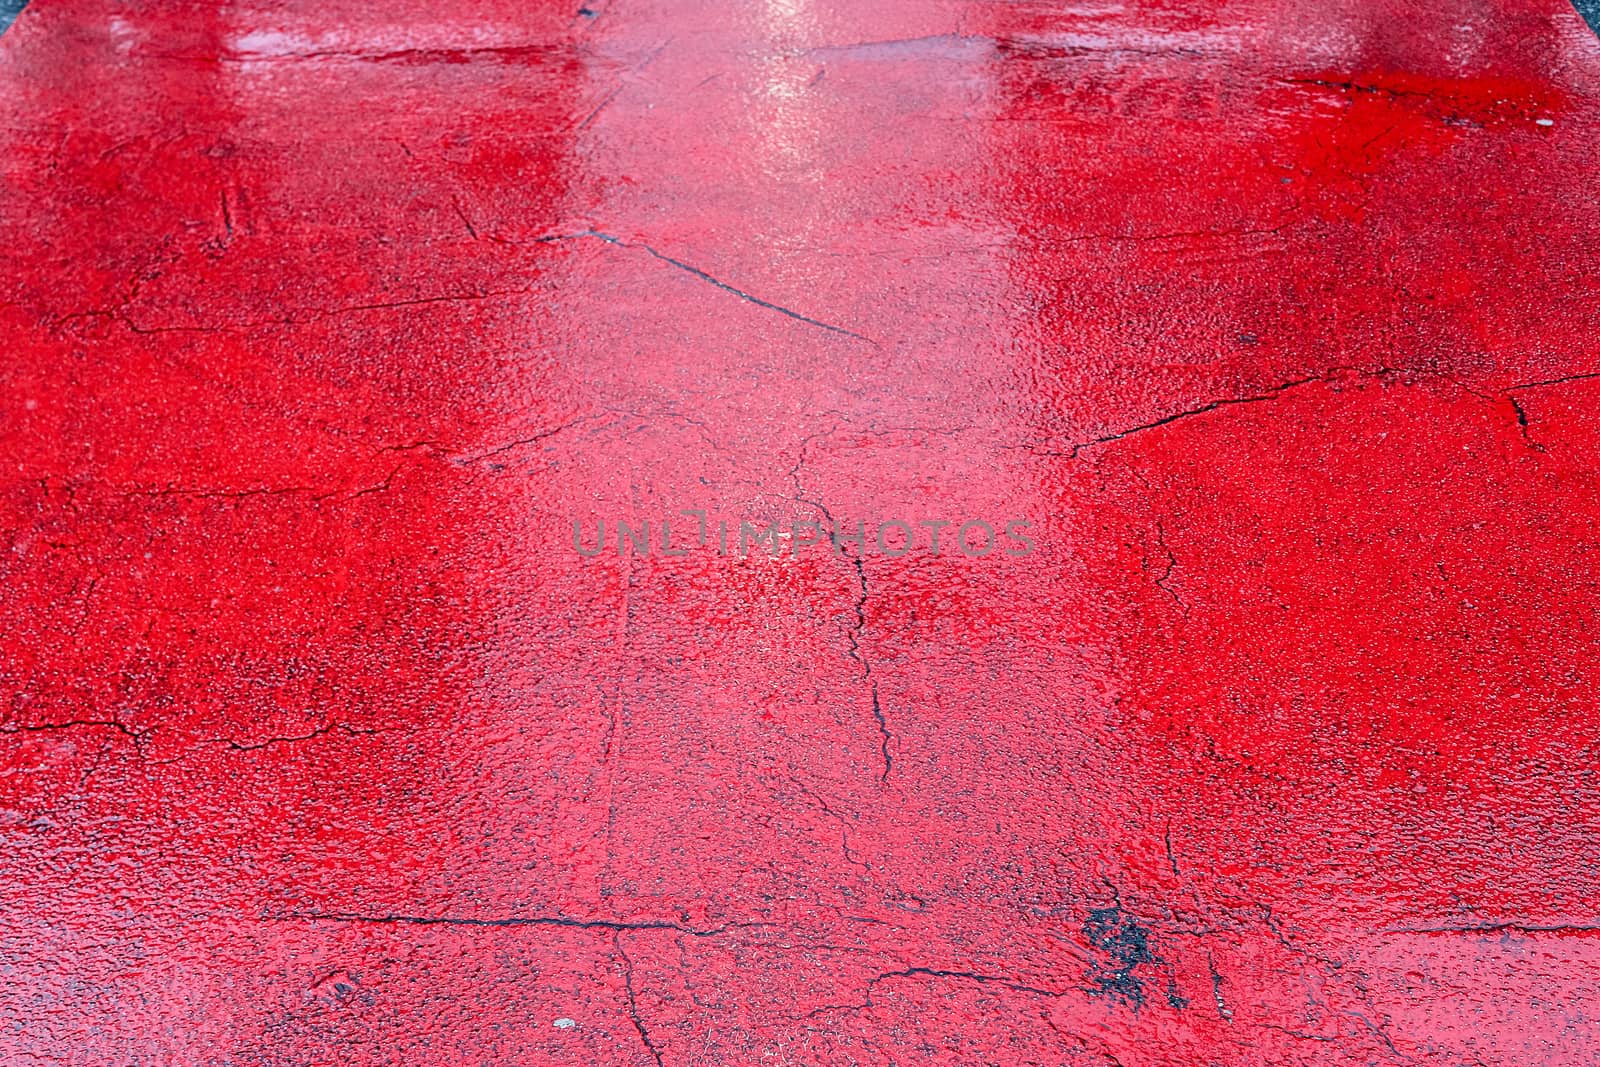 Wet ashpalt road texture. Heavy rain drops falling on city stree by MP_foto71